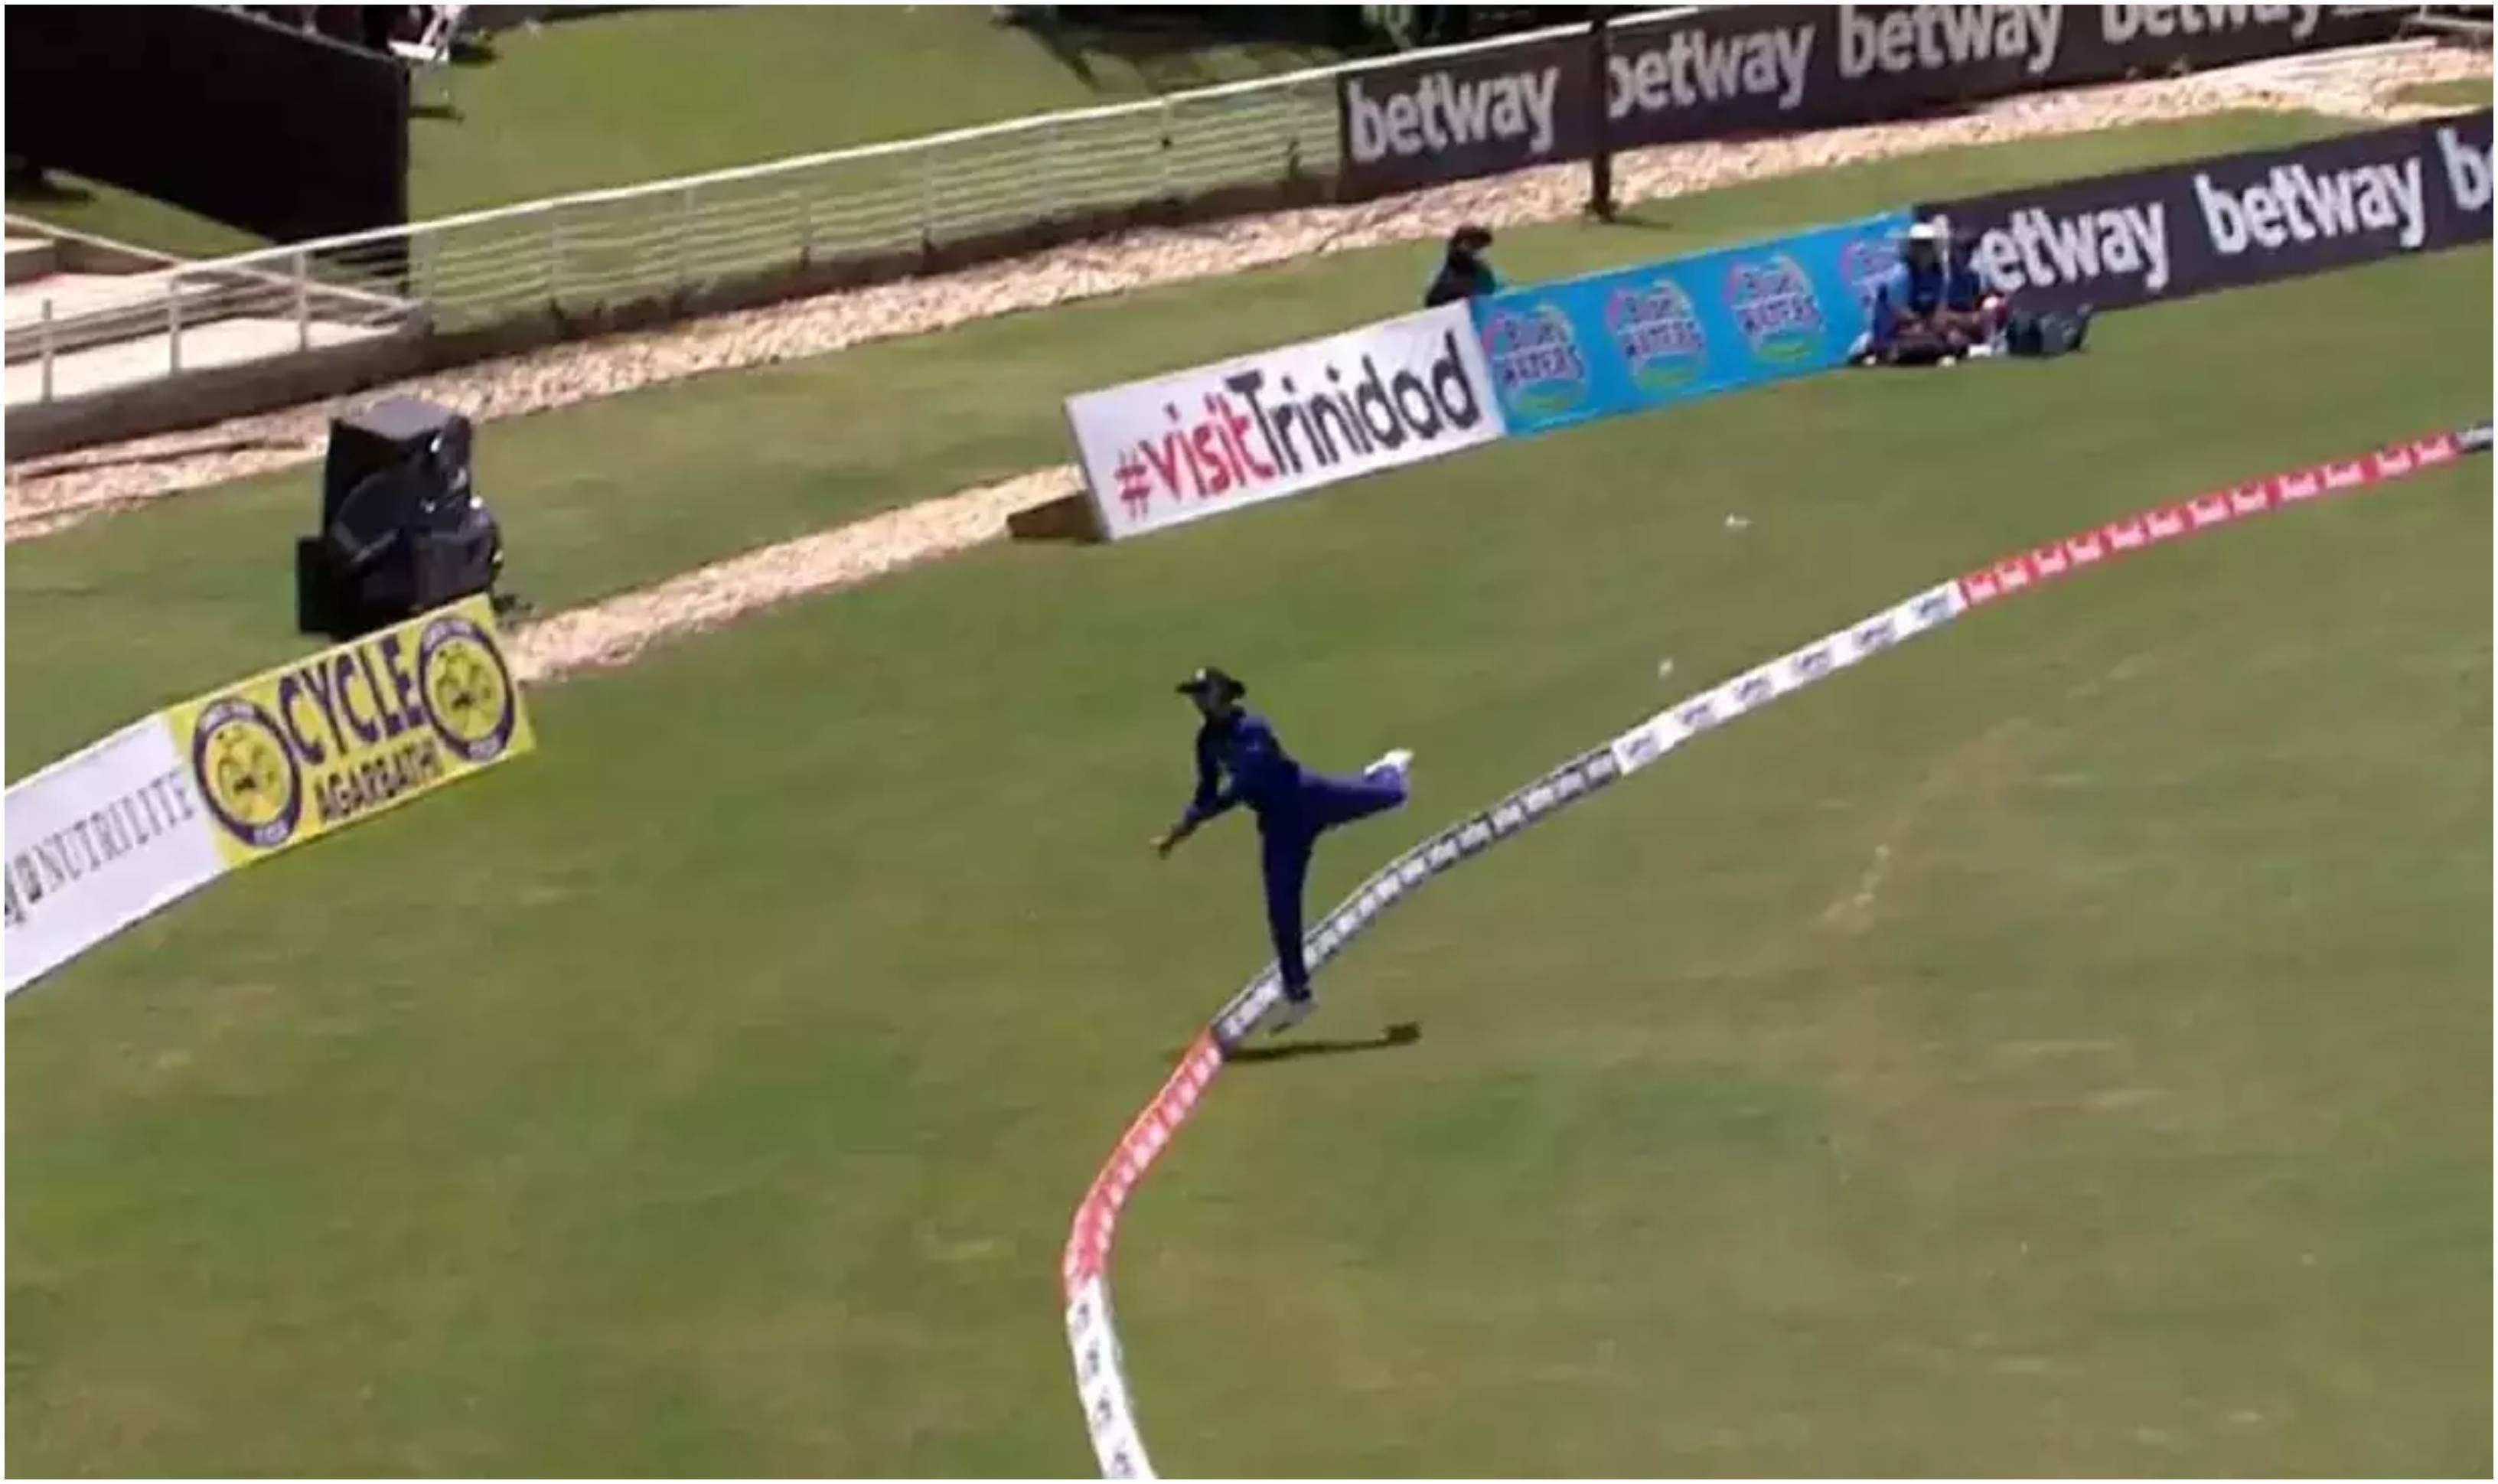 Shreyas Iyer’s acrobatic fielding effort | Screengrab